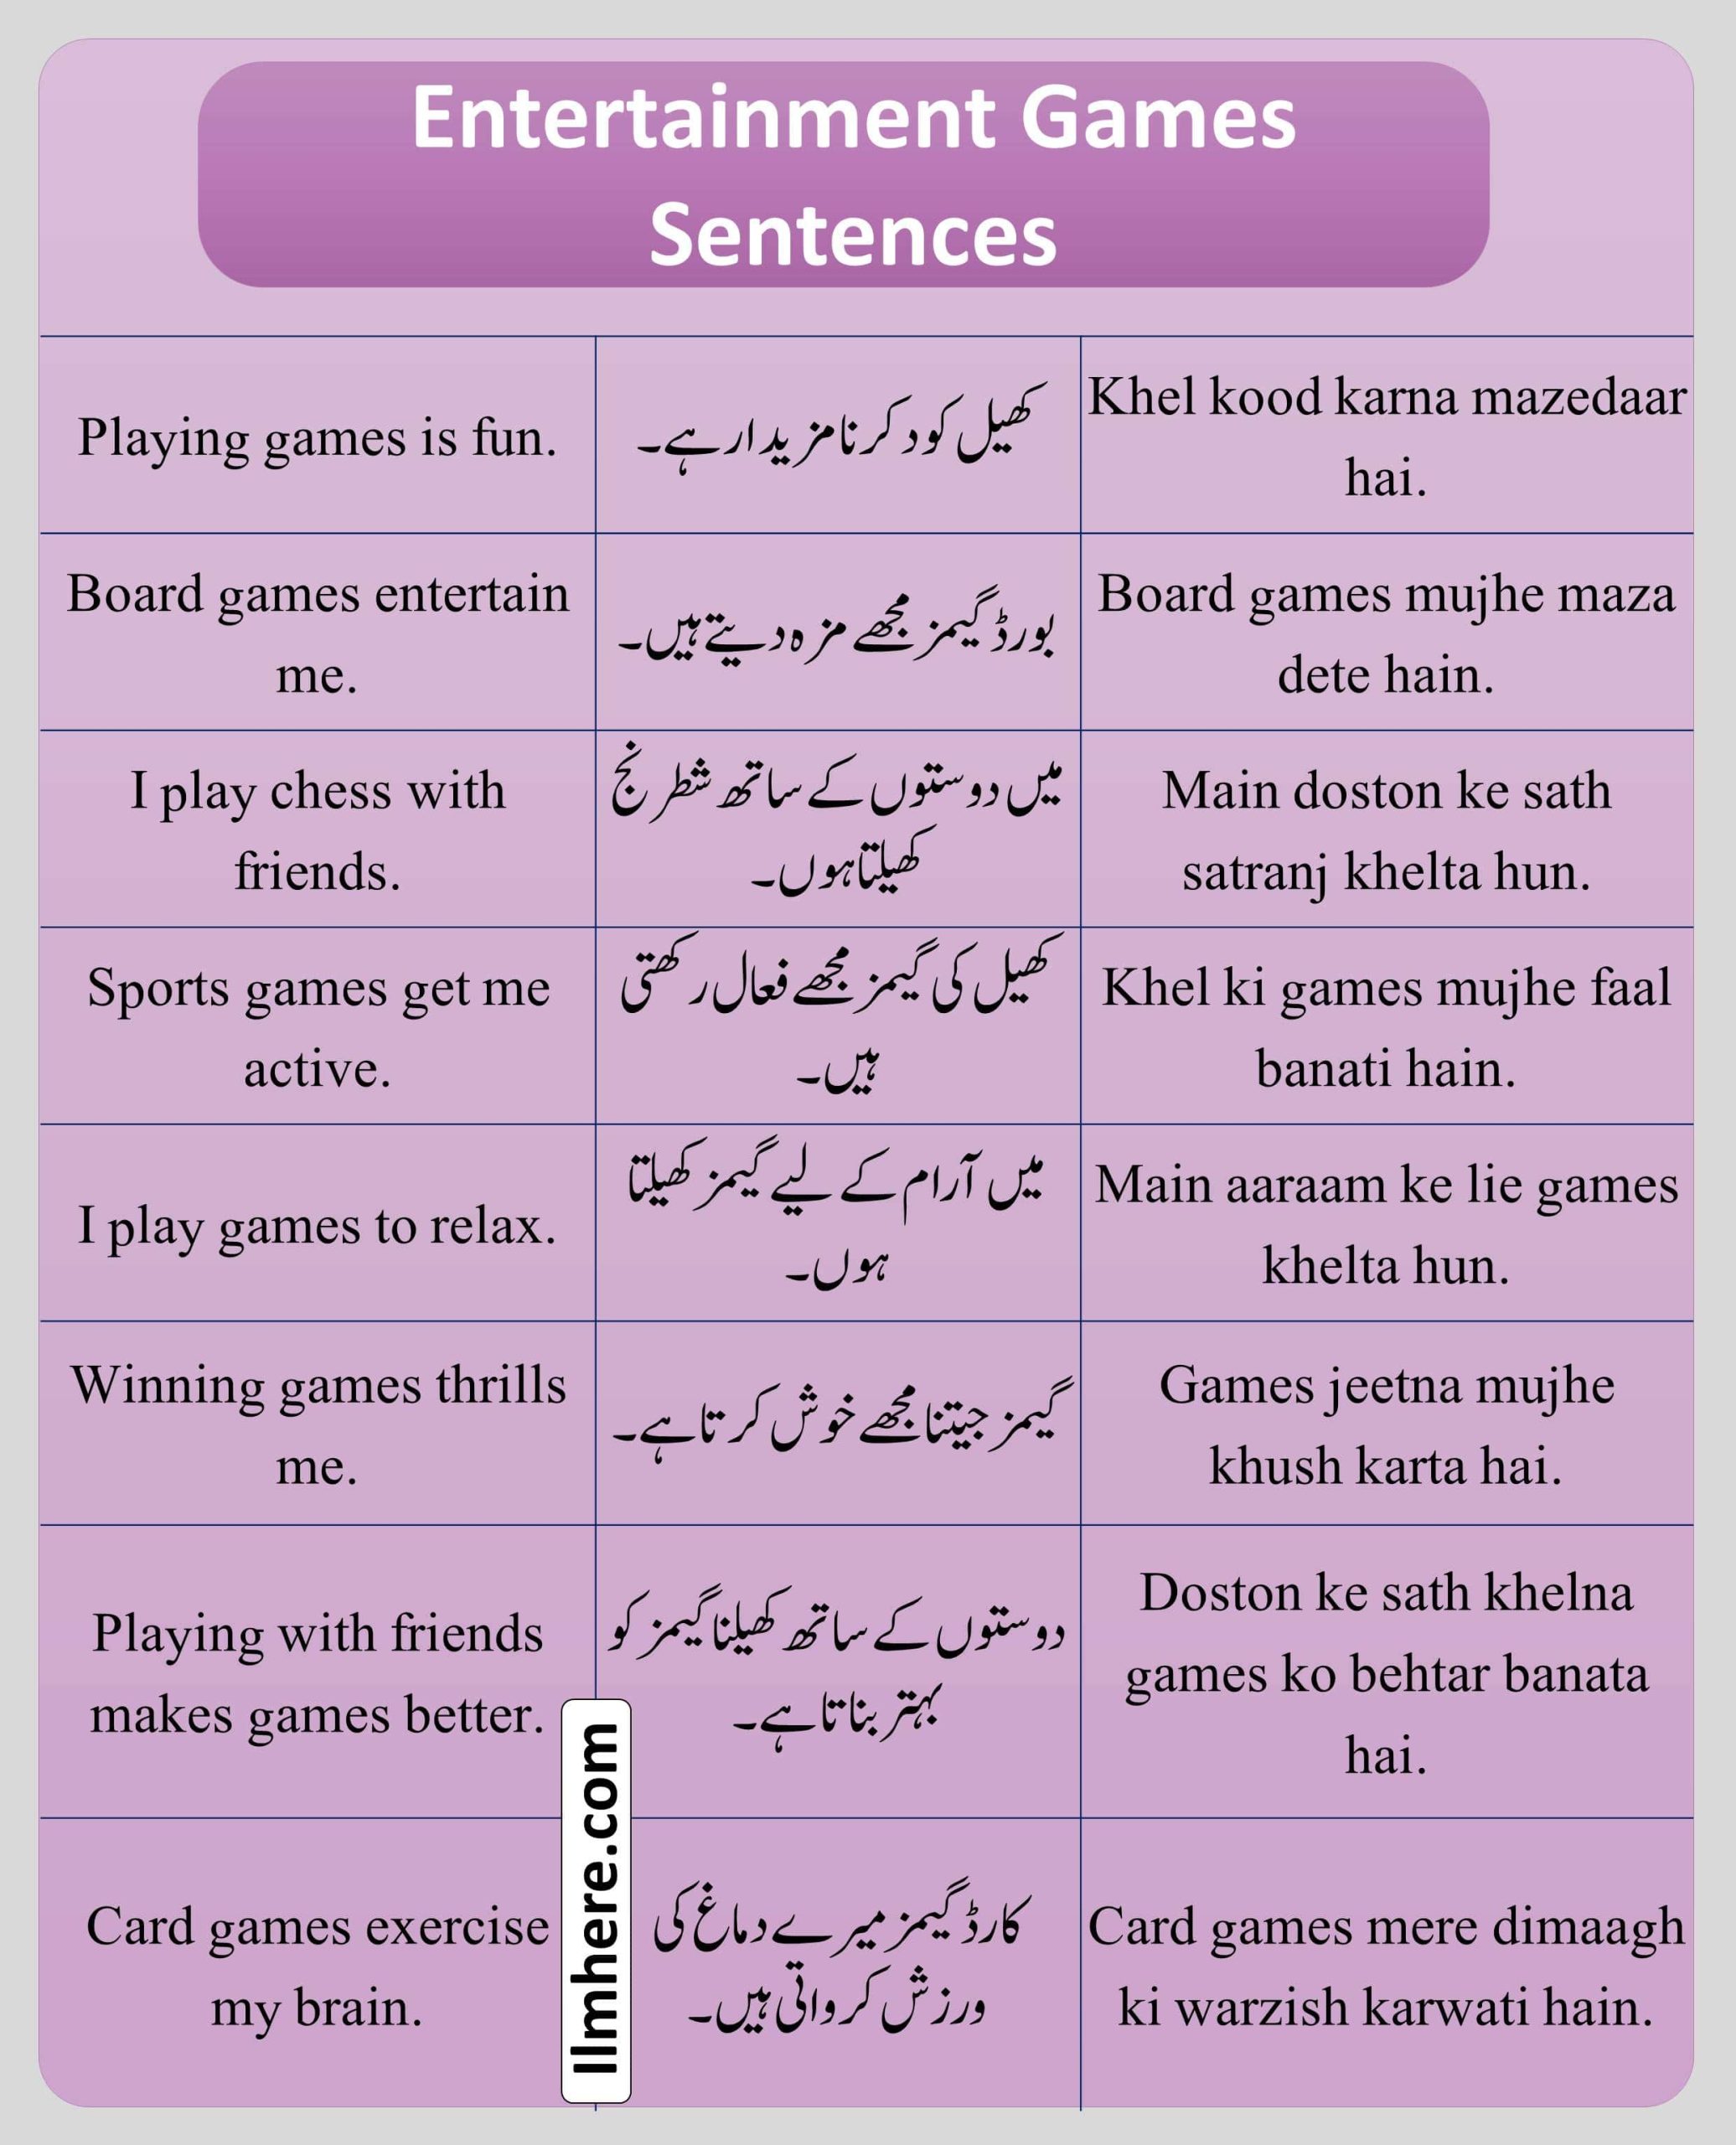 Entertainment Games Sentences